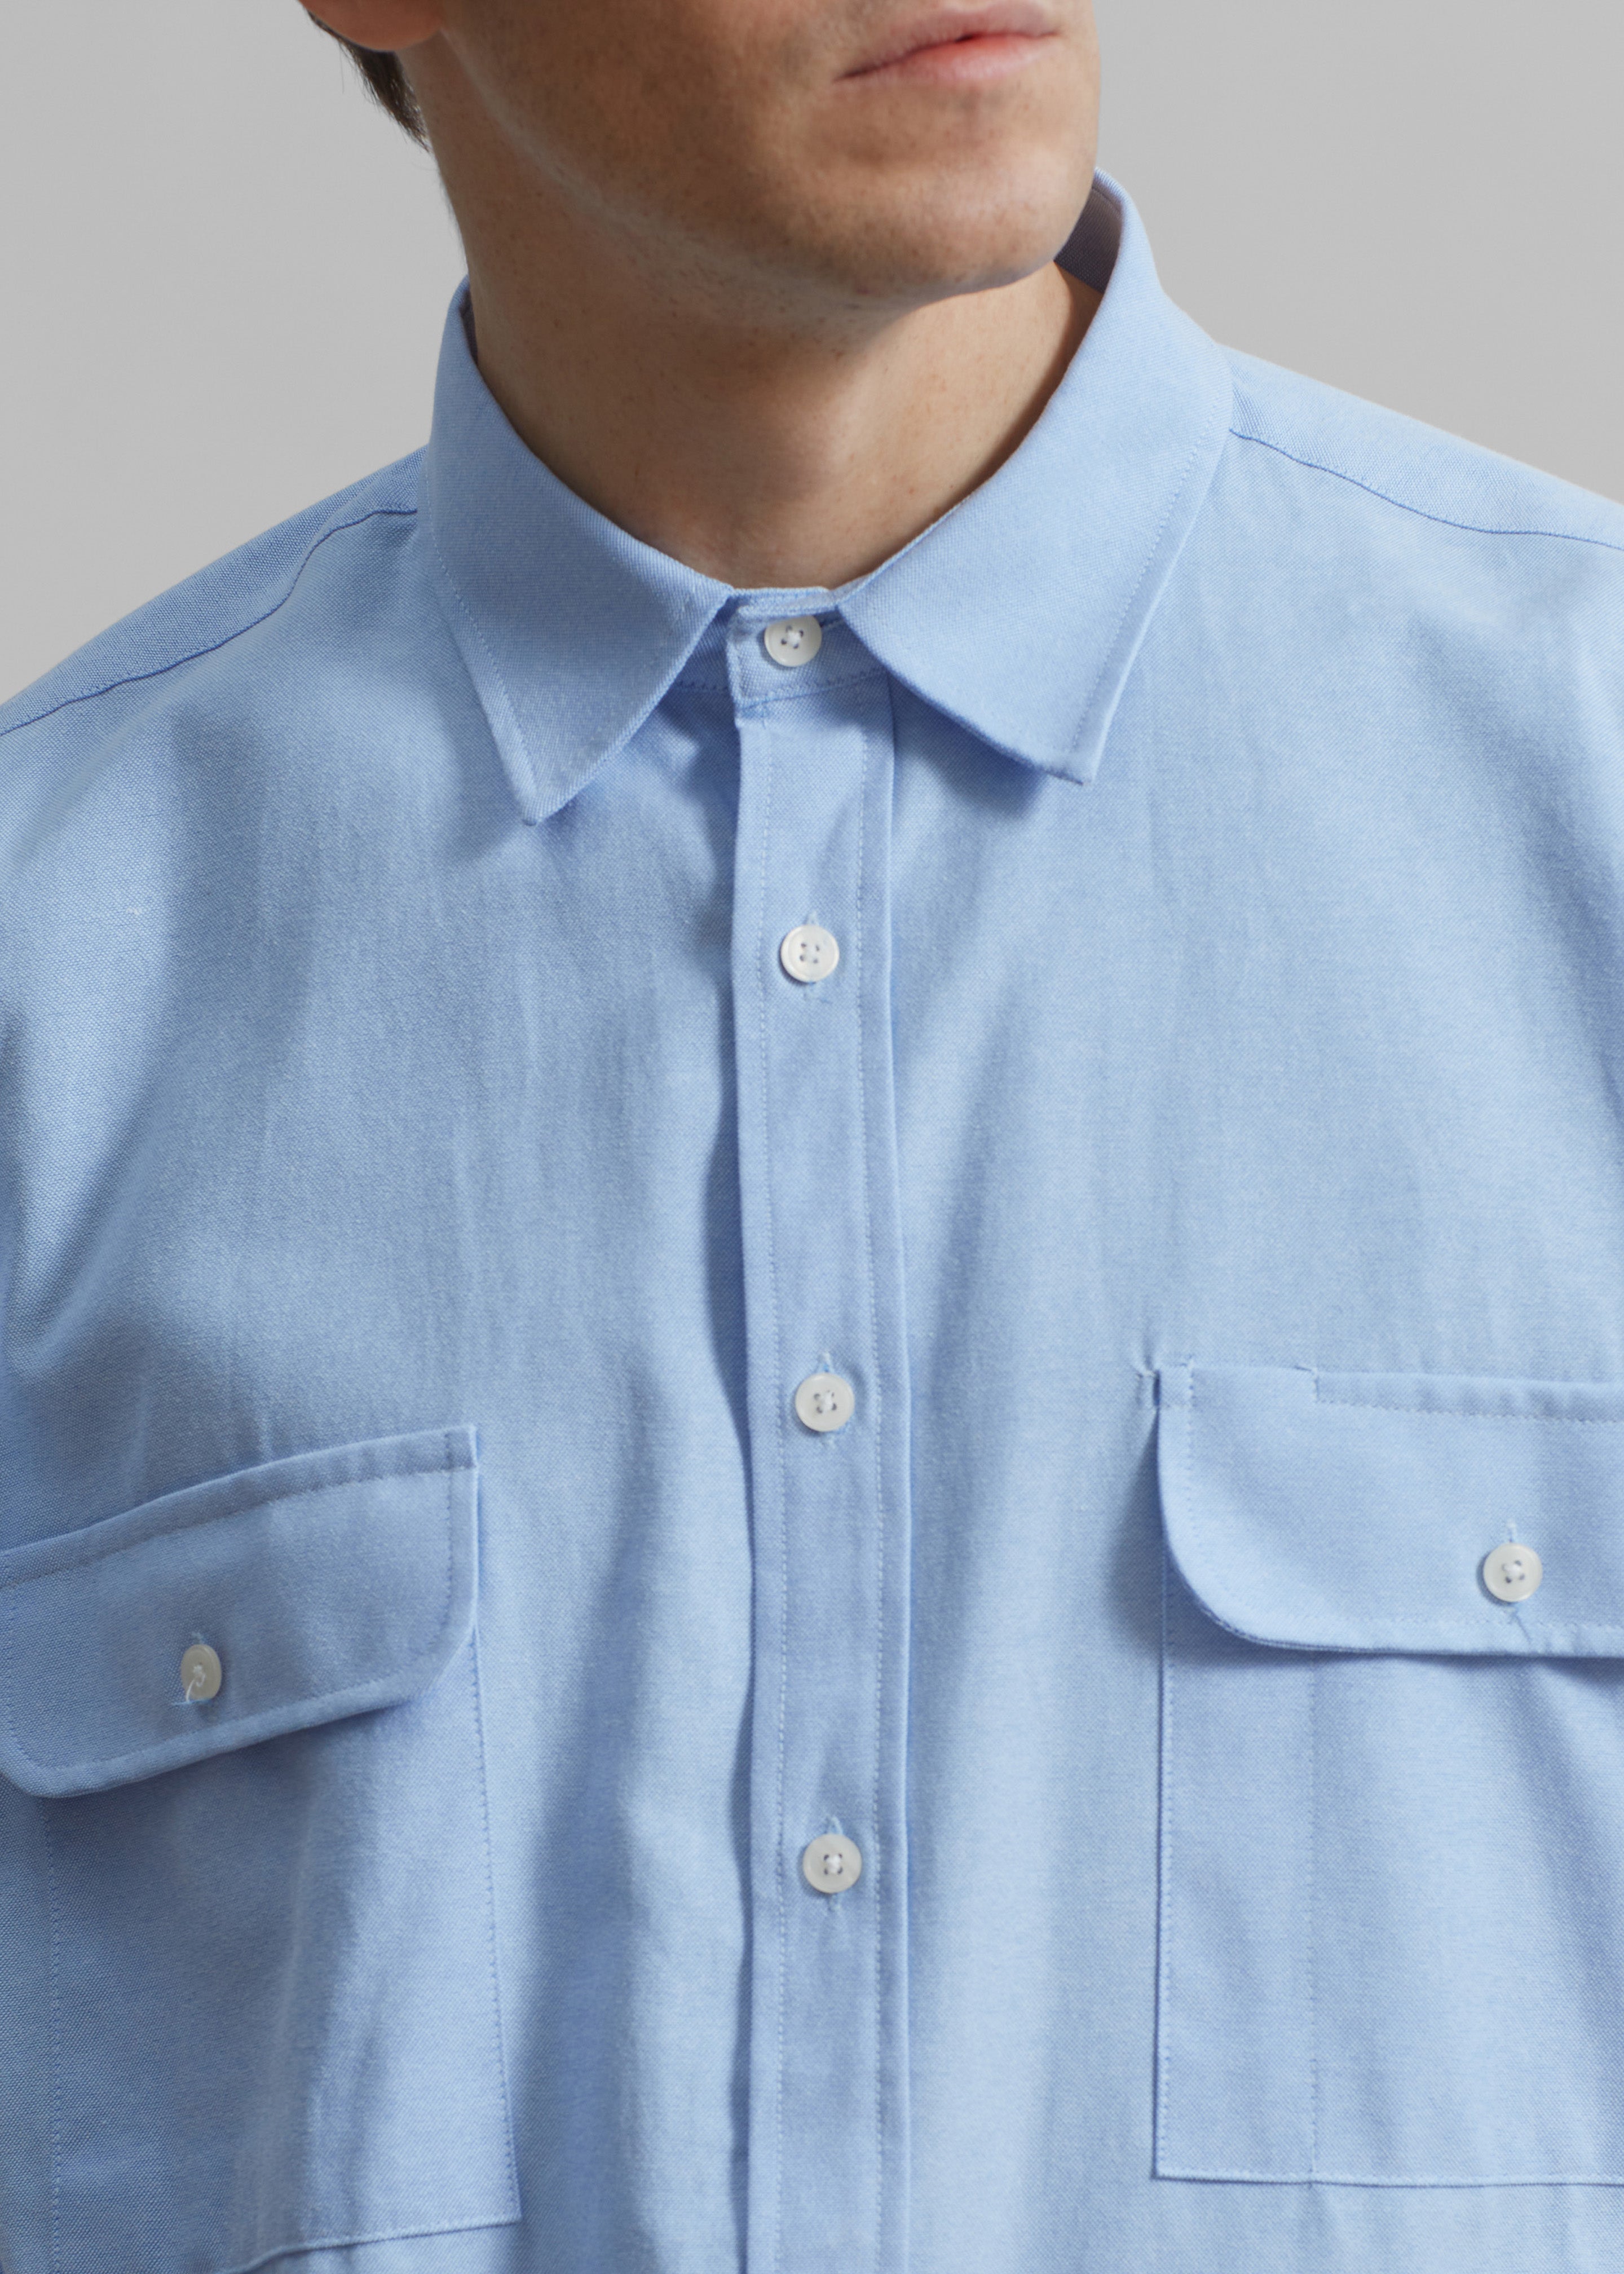 Alexander Button Up Shirt - Blue - 5